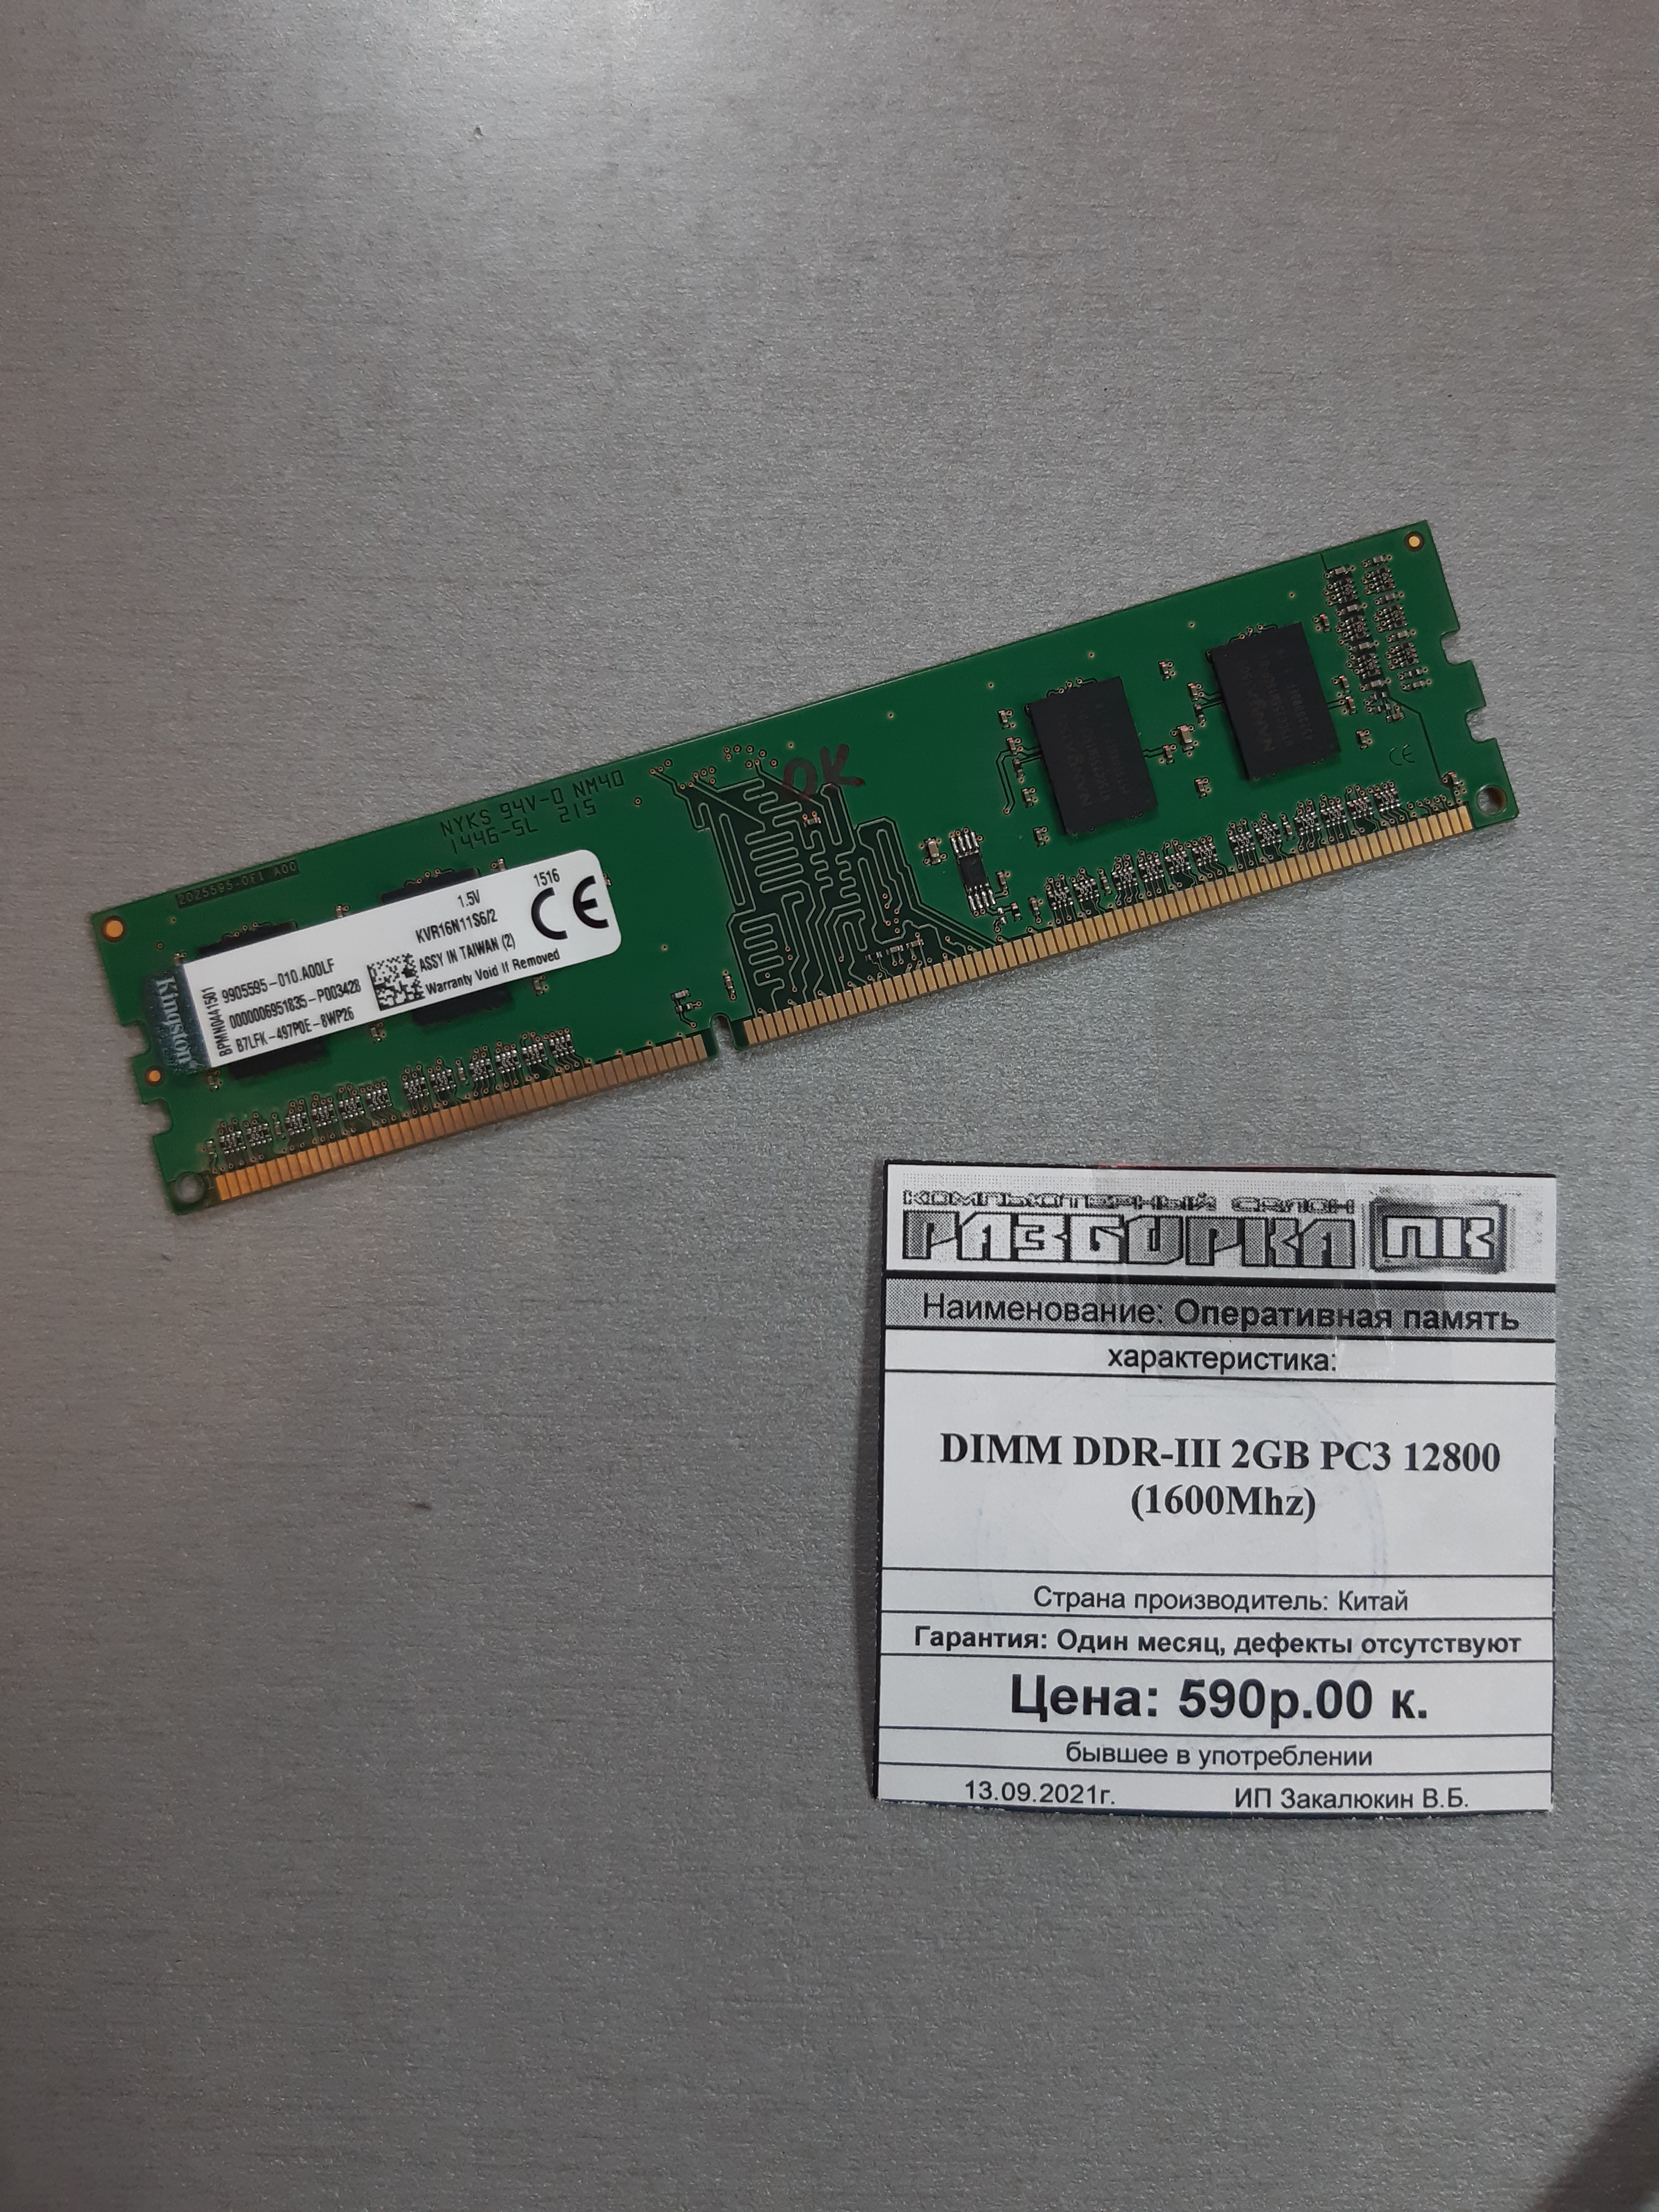 Оперативная память DIMM DDR-III 2GB PC3 12800 (1600Mhz)